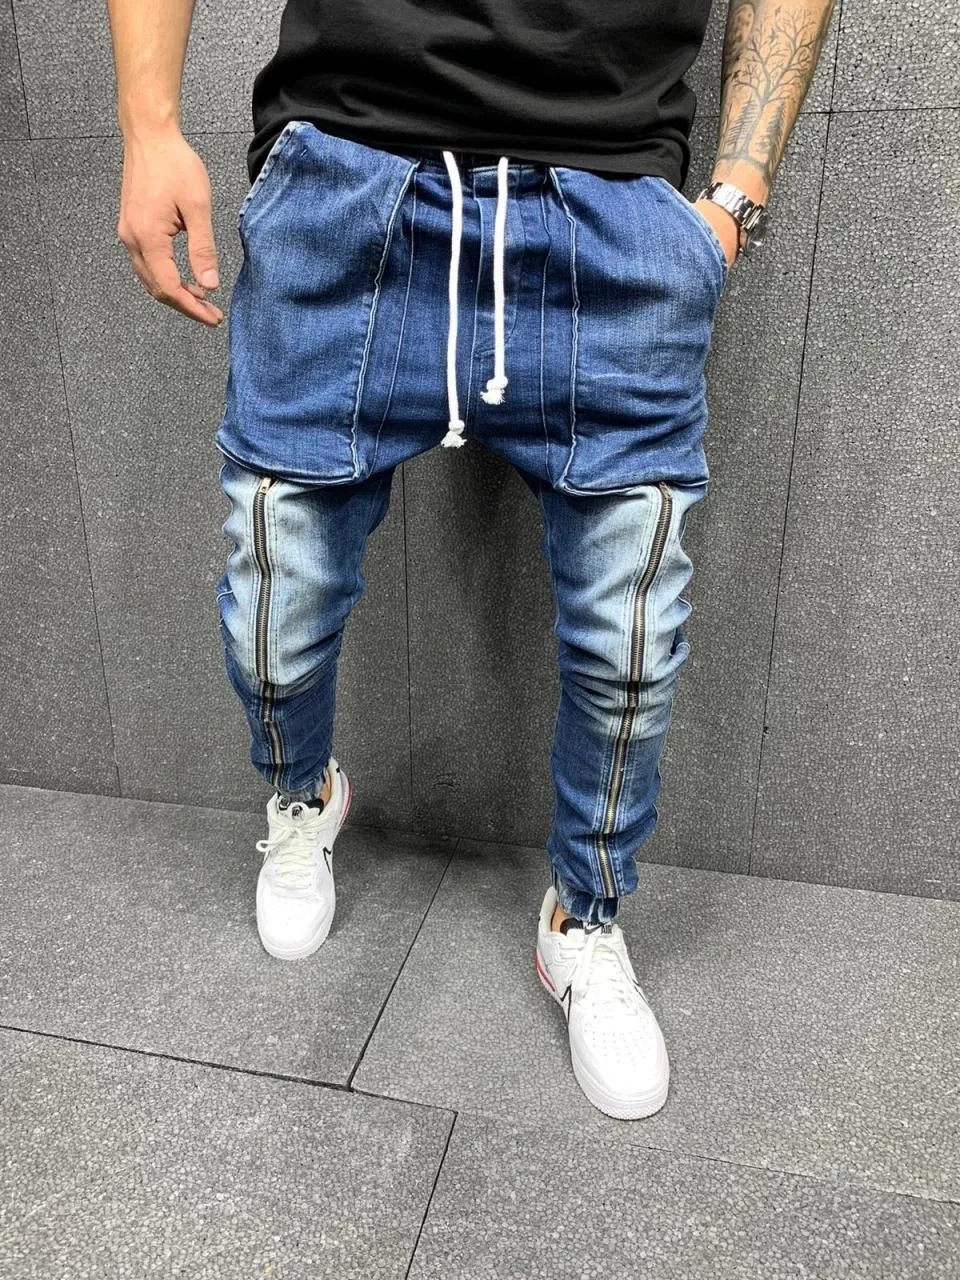 Men's Jeans Mid Waist Slim Stretch Jeans Men's Casual Sports Pants Lace Up Zipper Pencil Pants Four Seasons Blue Jeans Brand New